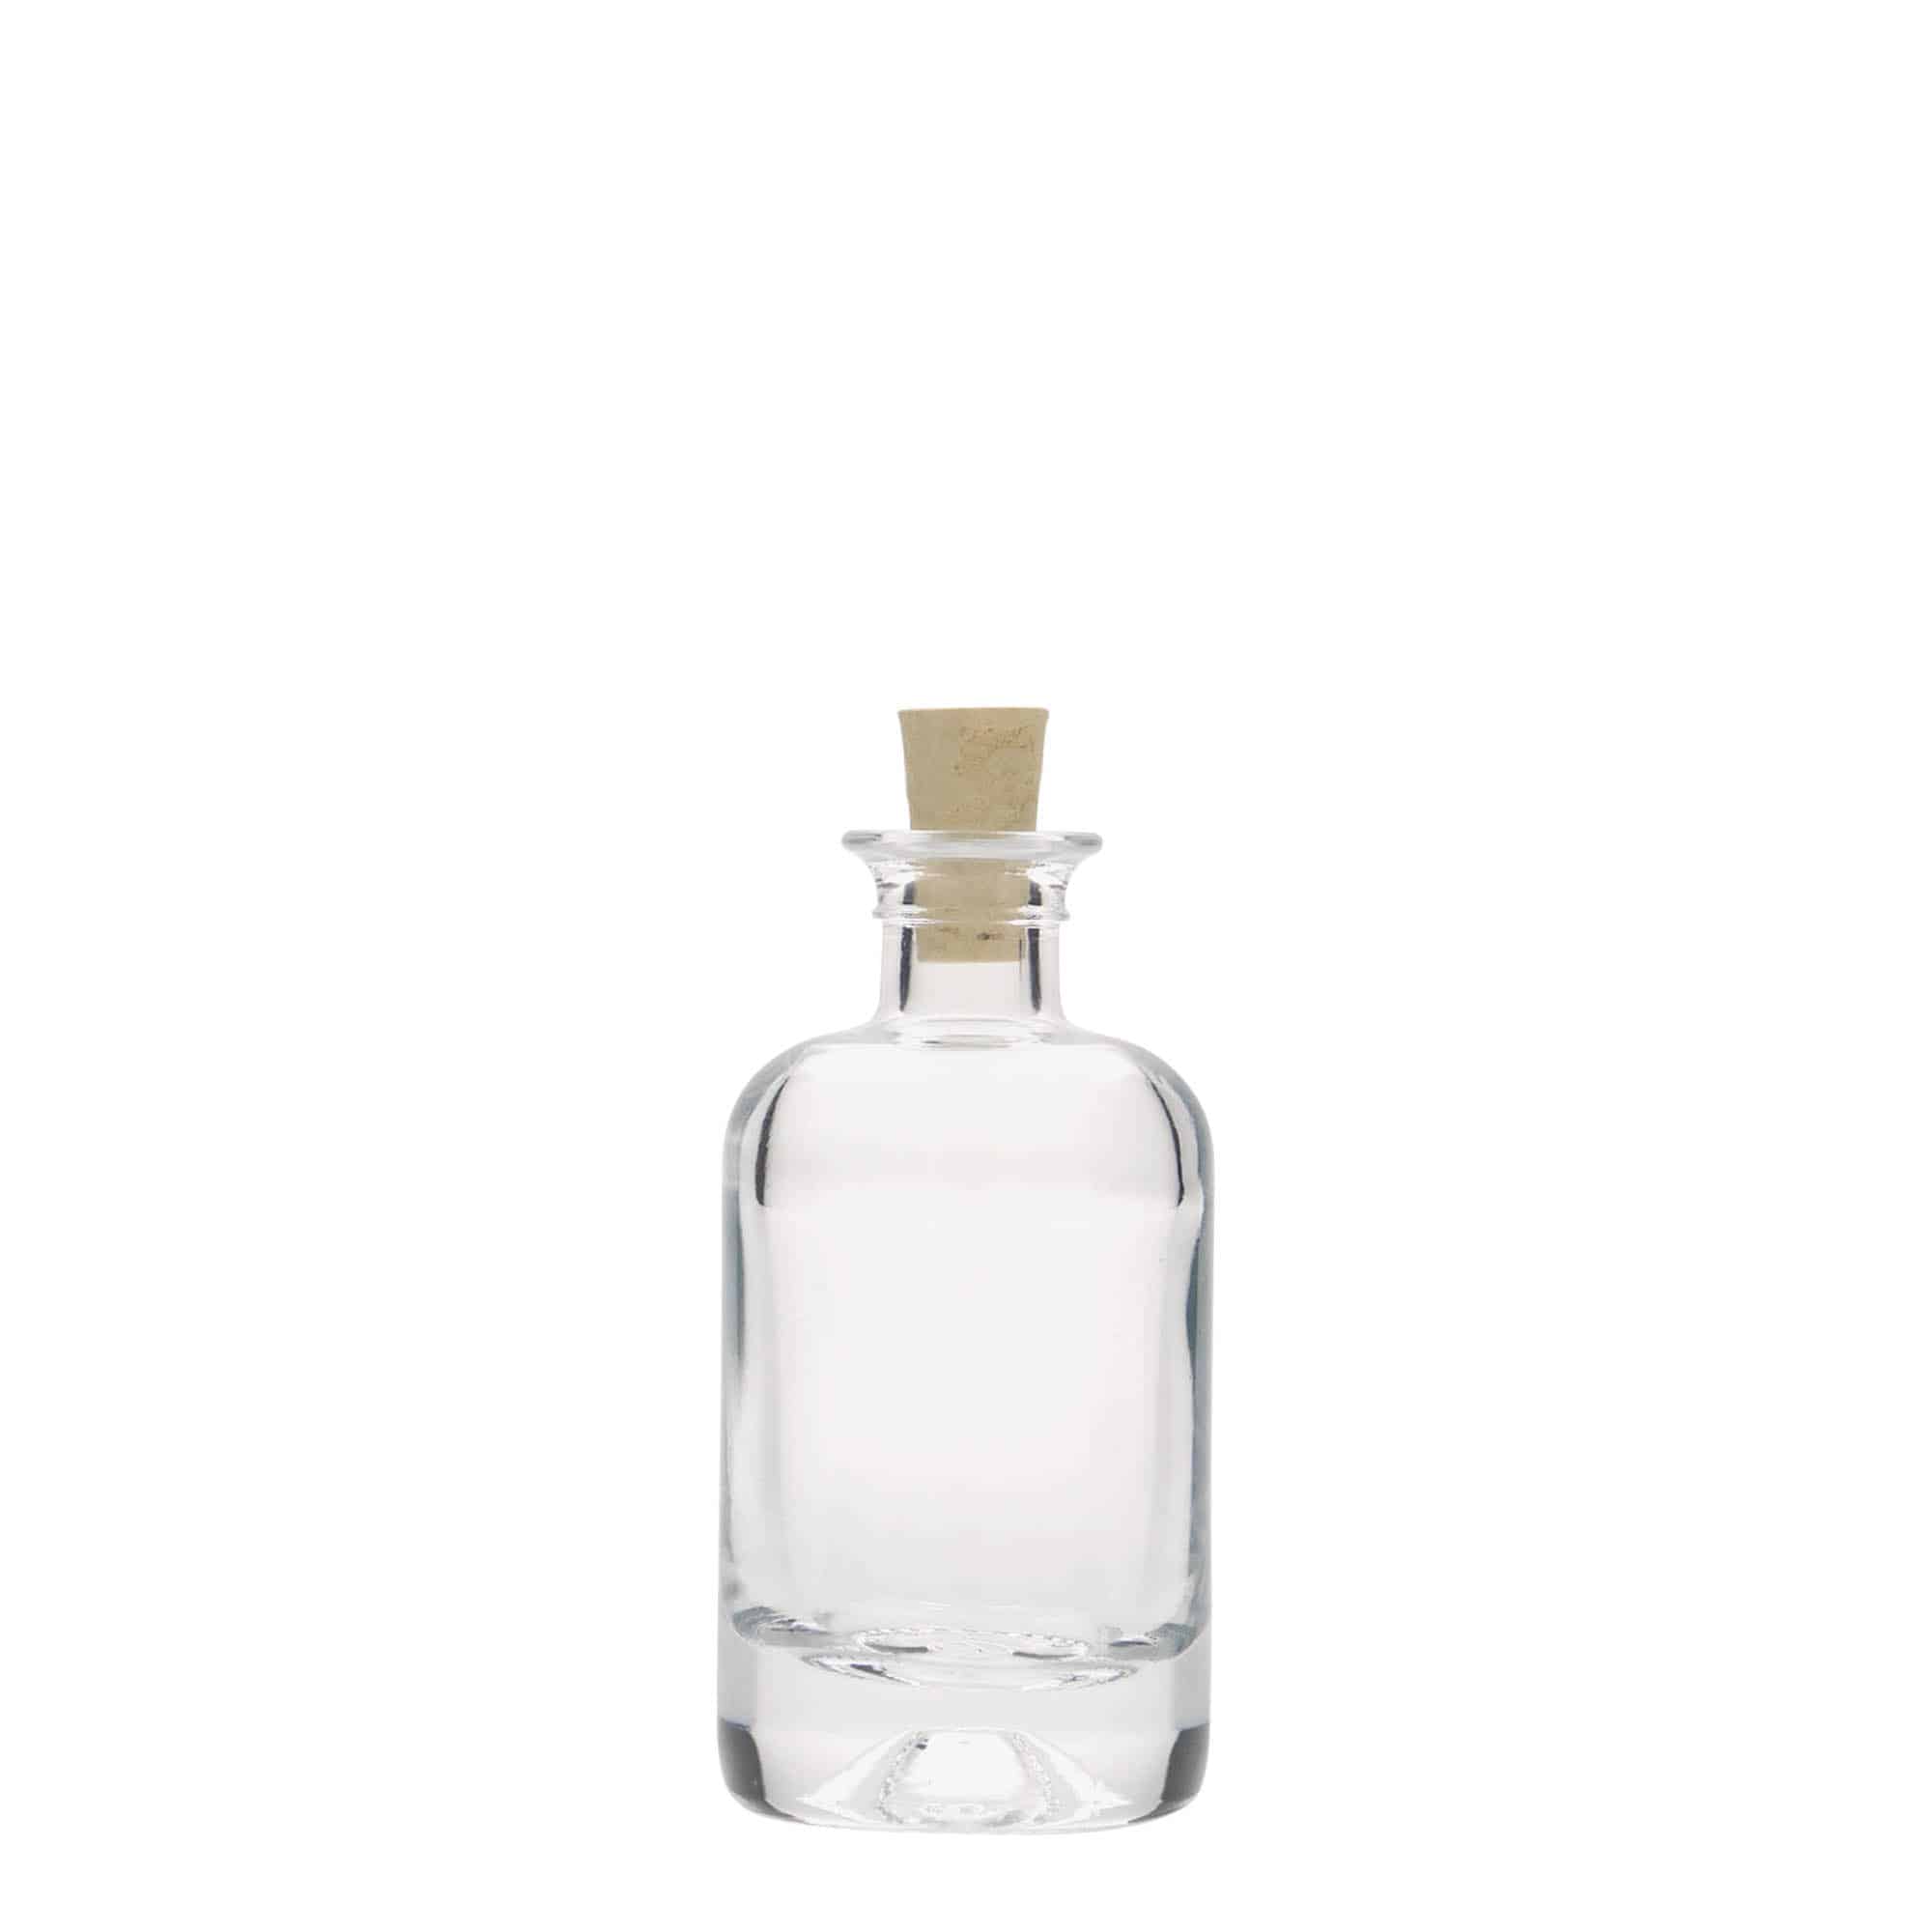 40 ml butelka szklana apteczna, zamknięcie: korek